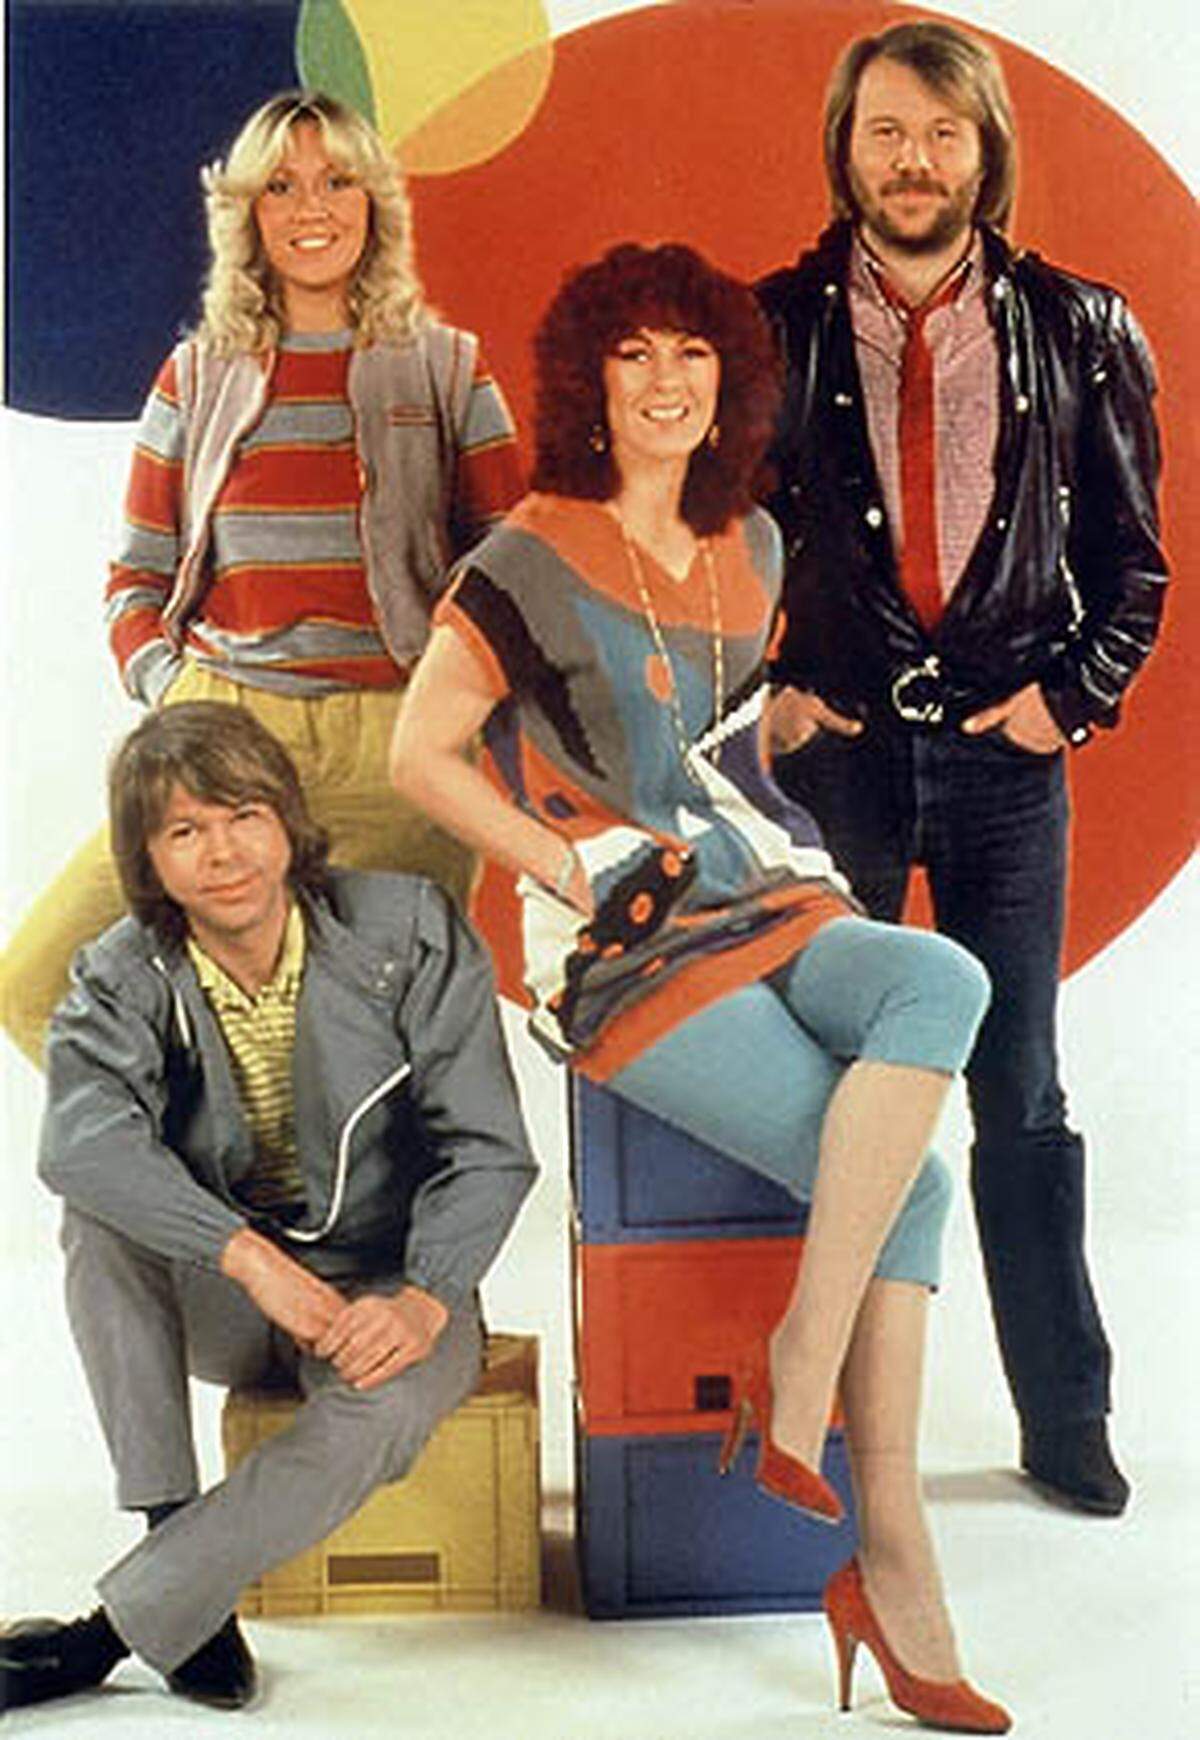 And the winner is... ABBA. Die schwedische Popband steht mit ihren bunten Kostümen und den Gute-Laune-Songs ganz oben auf den Schwulen Charts. Platz 1 für den Evergreen "Dancing Queen"!